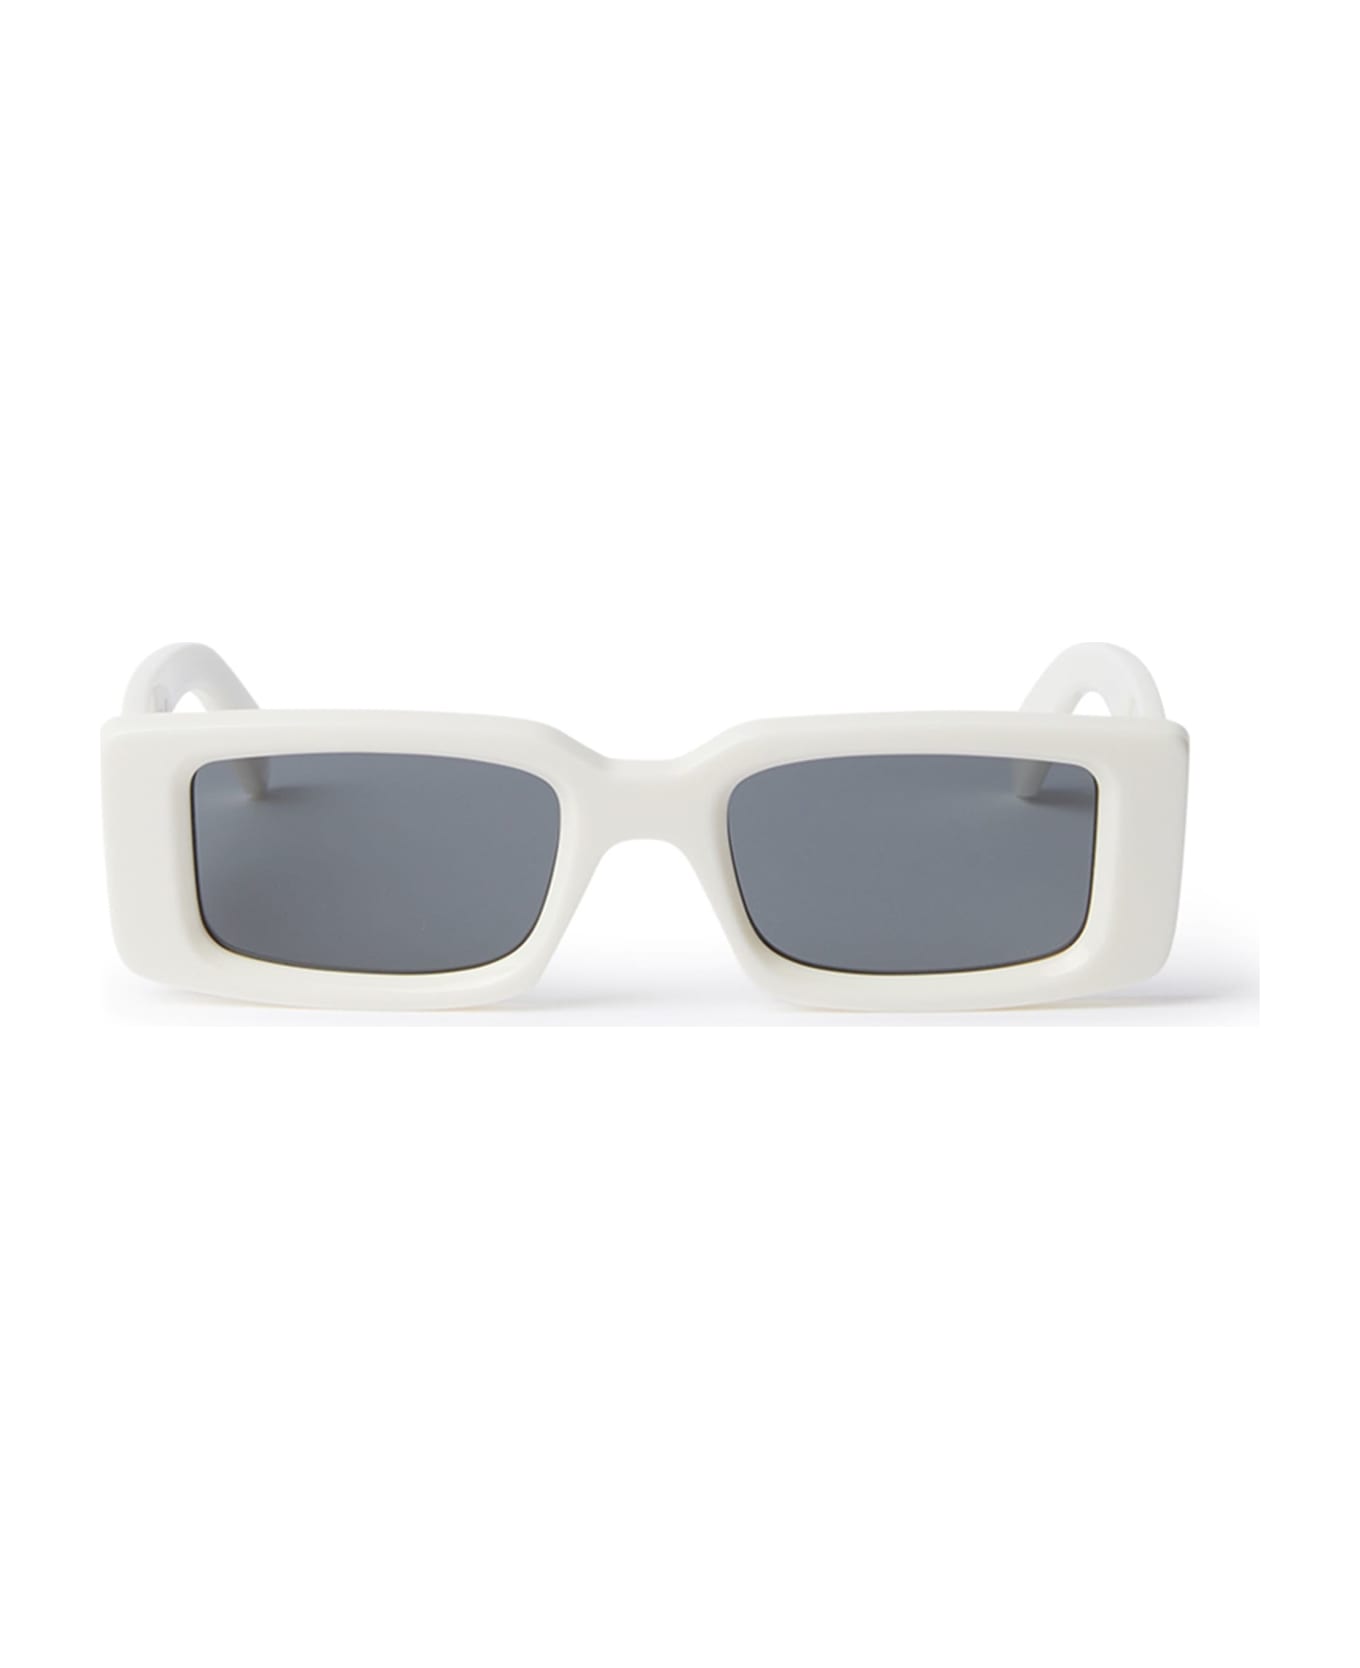 Off-White Arthur - White / Dark Grey Sunglasses - White